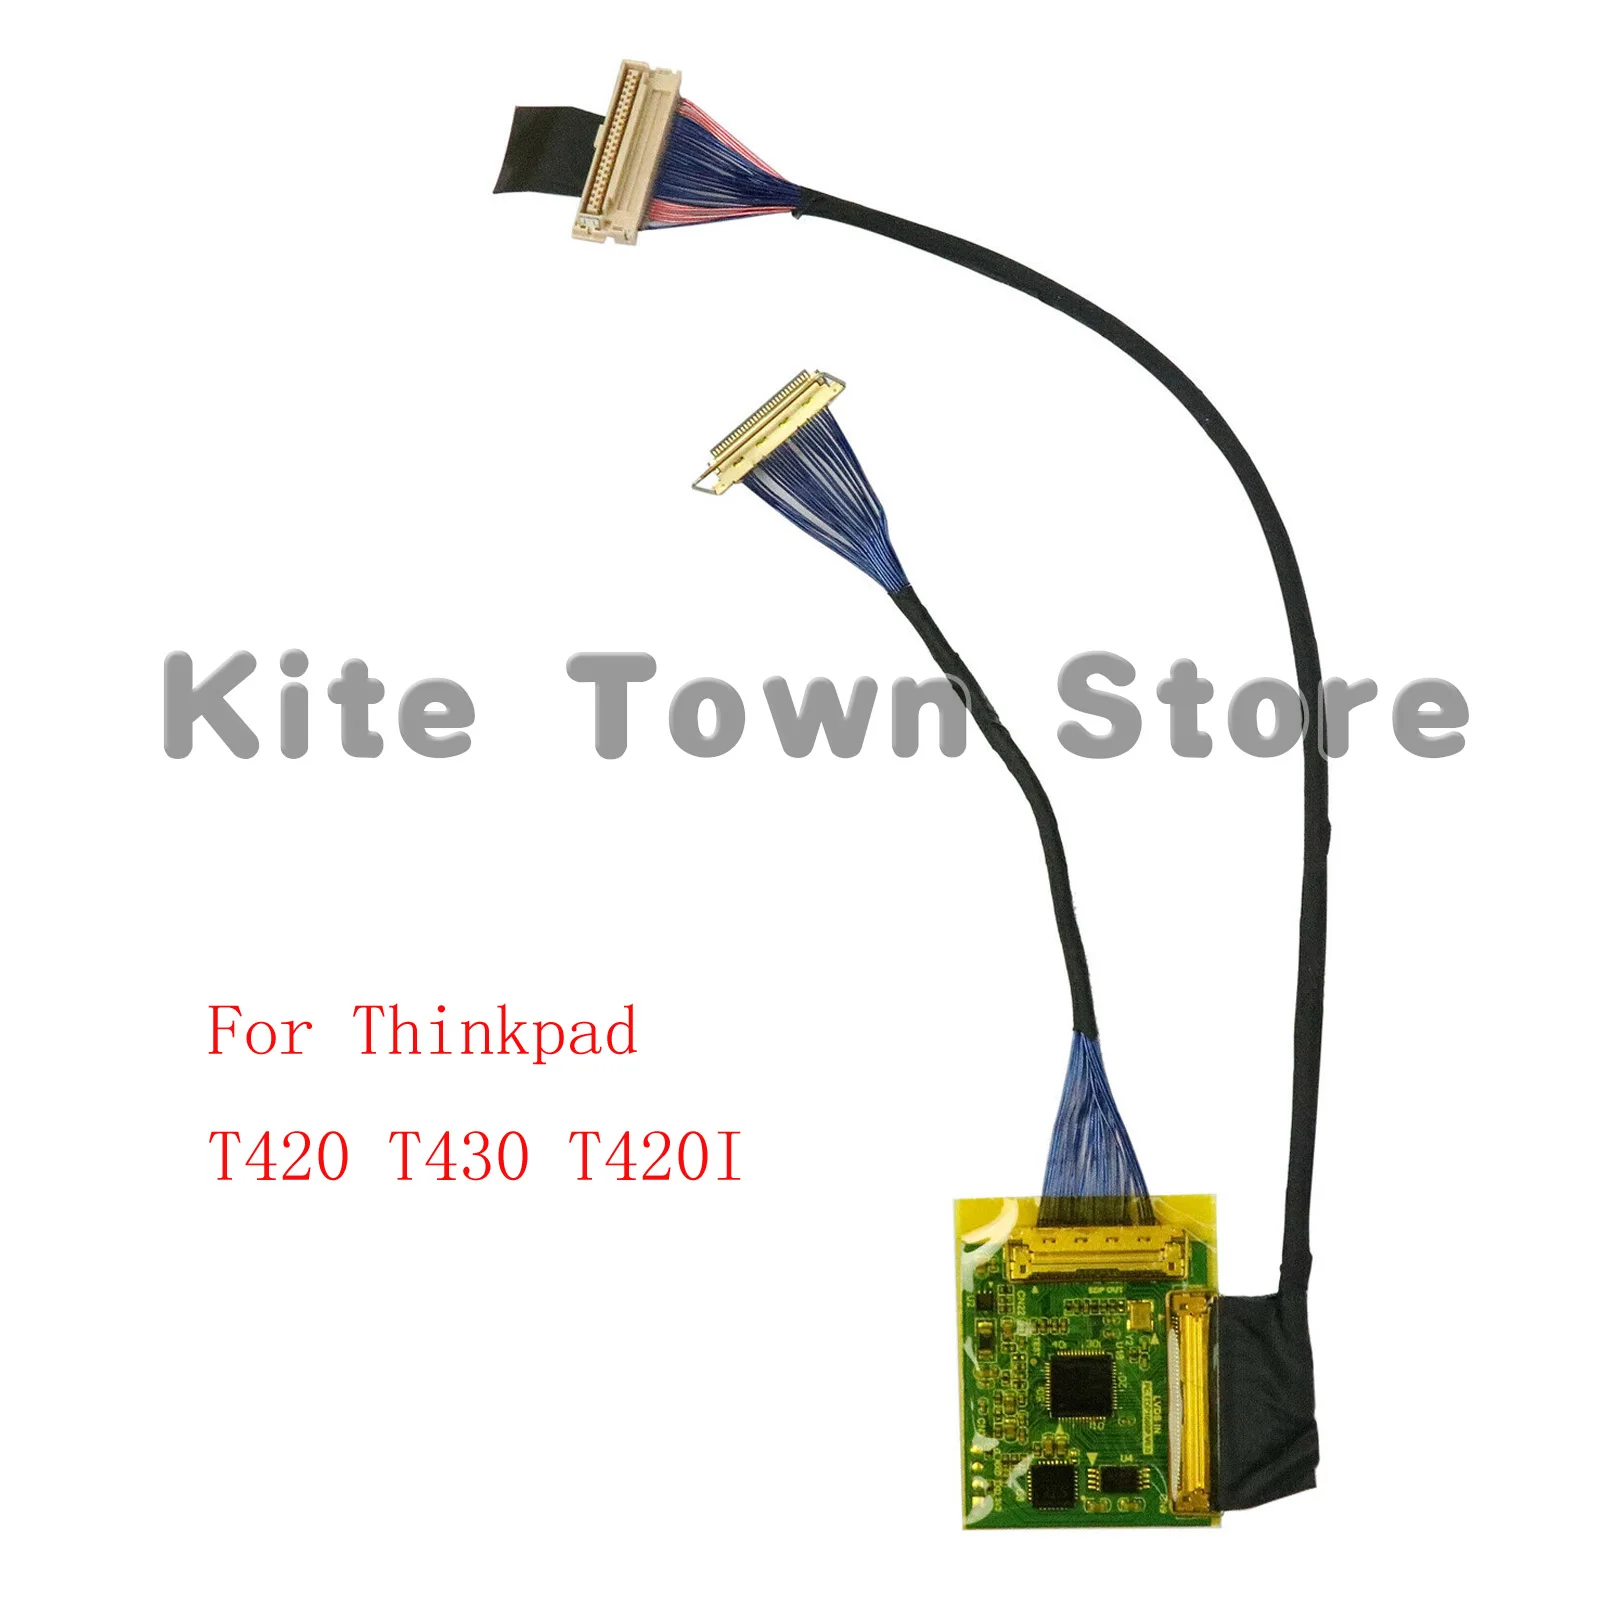 nuovo-kit-di-aggiornamento-1920-x1080-1080p-ips-fhd-per-controller-lcd-thinkpad-t430-t420-t420i